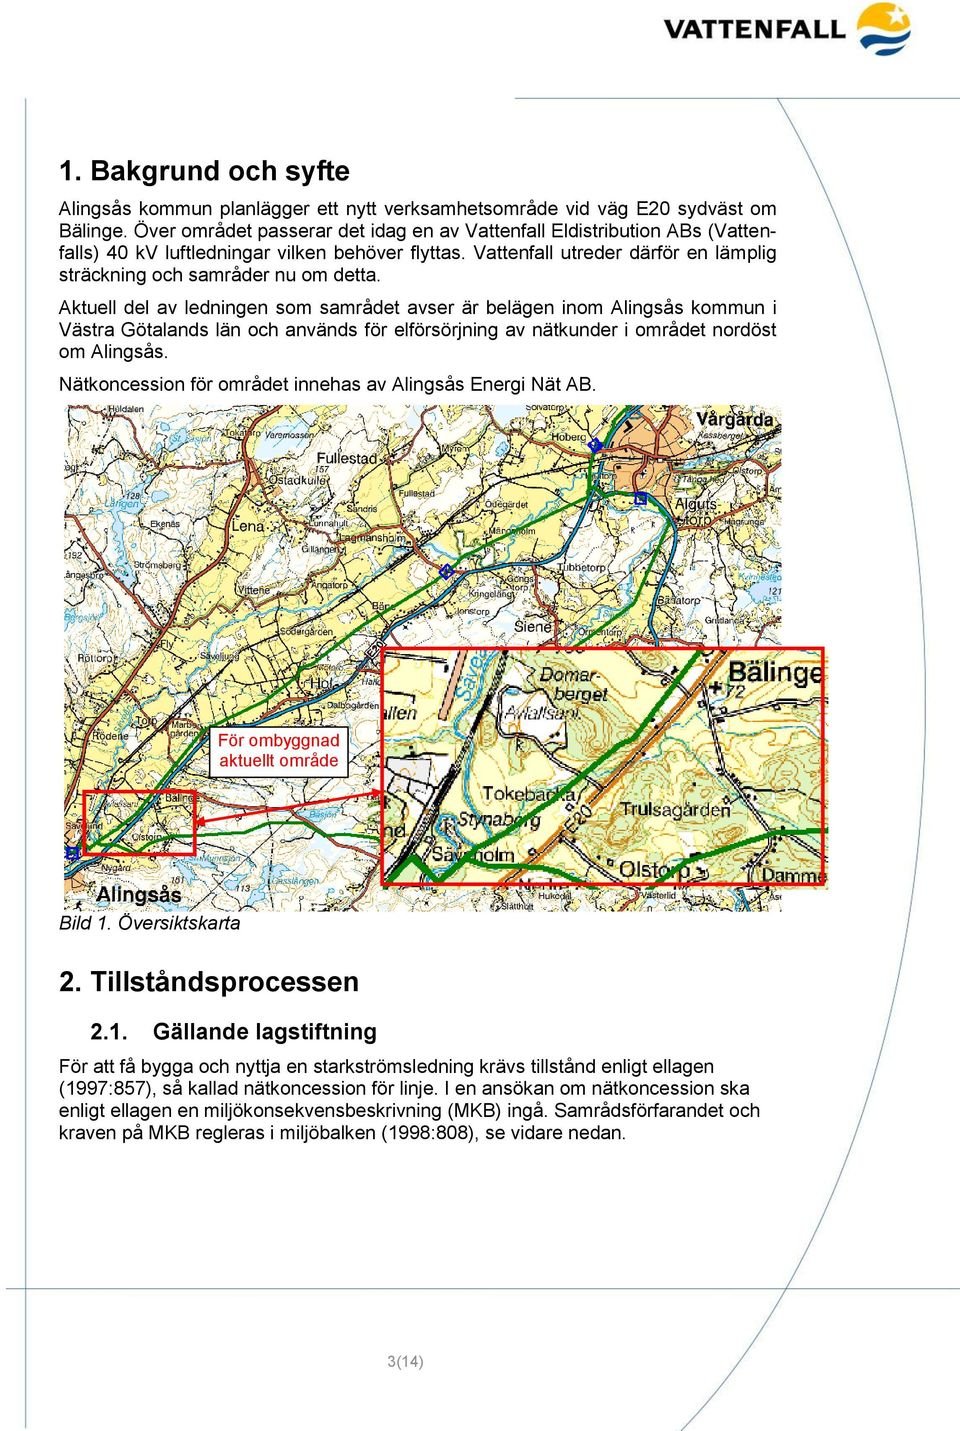 Aktuell del av ledningen som samrådet avser är belägen inom Alingsås kommun i Västra Götalands län och används för elförsörjning av nätkunder i området nordöst om Alingsås.